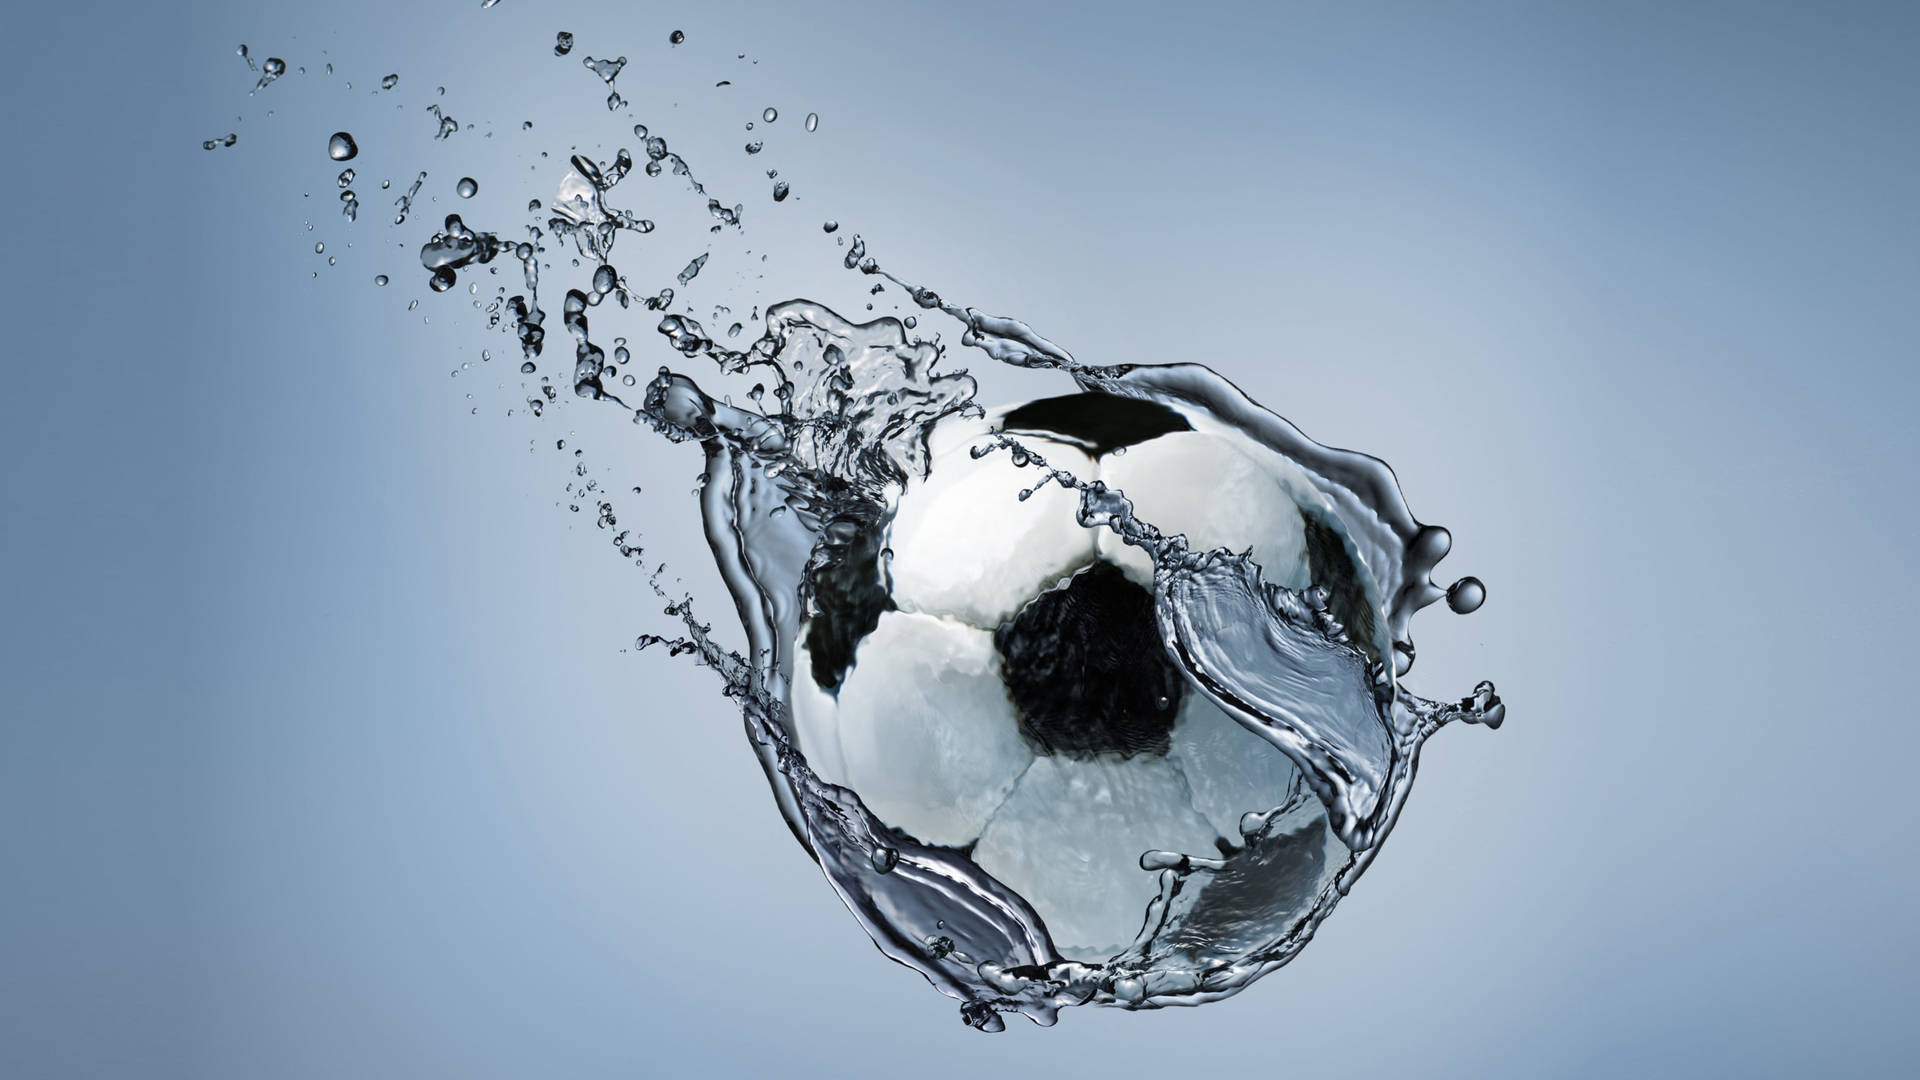 4kfußball Im Wasser Wallpaper